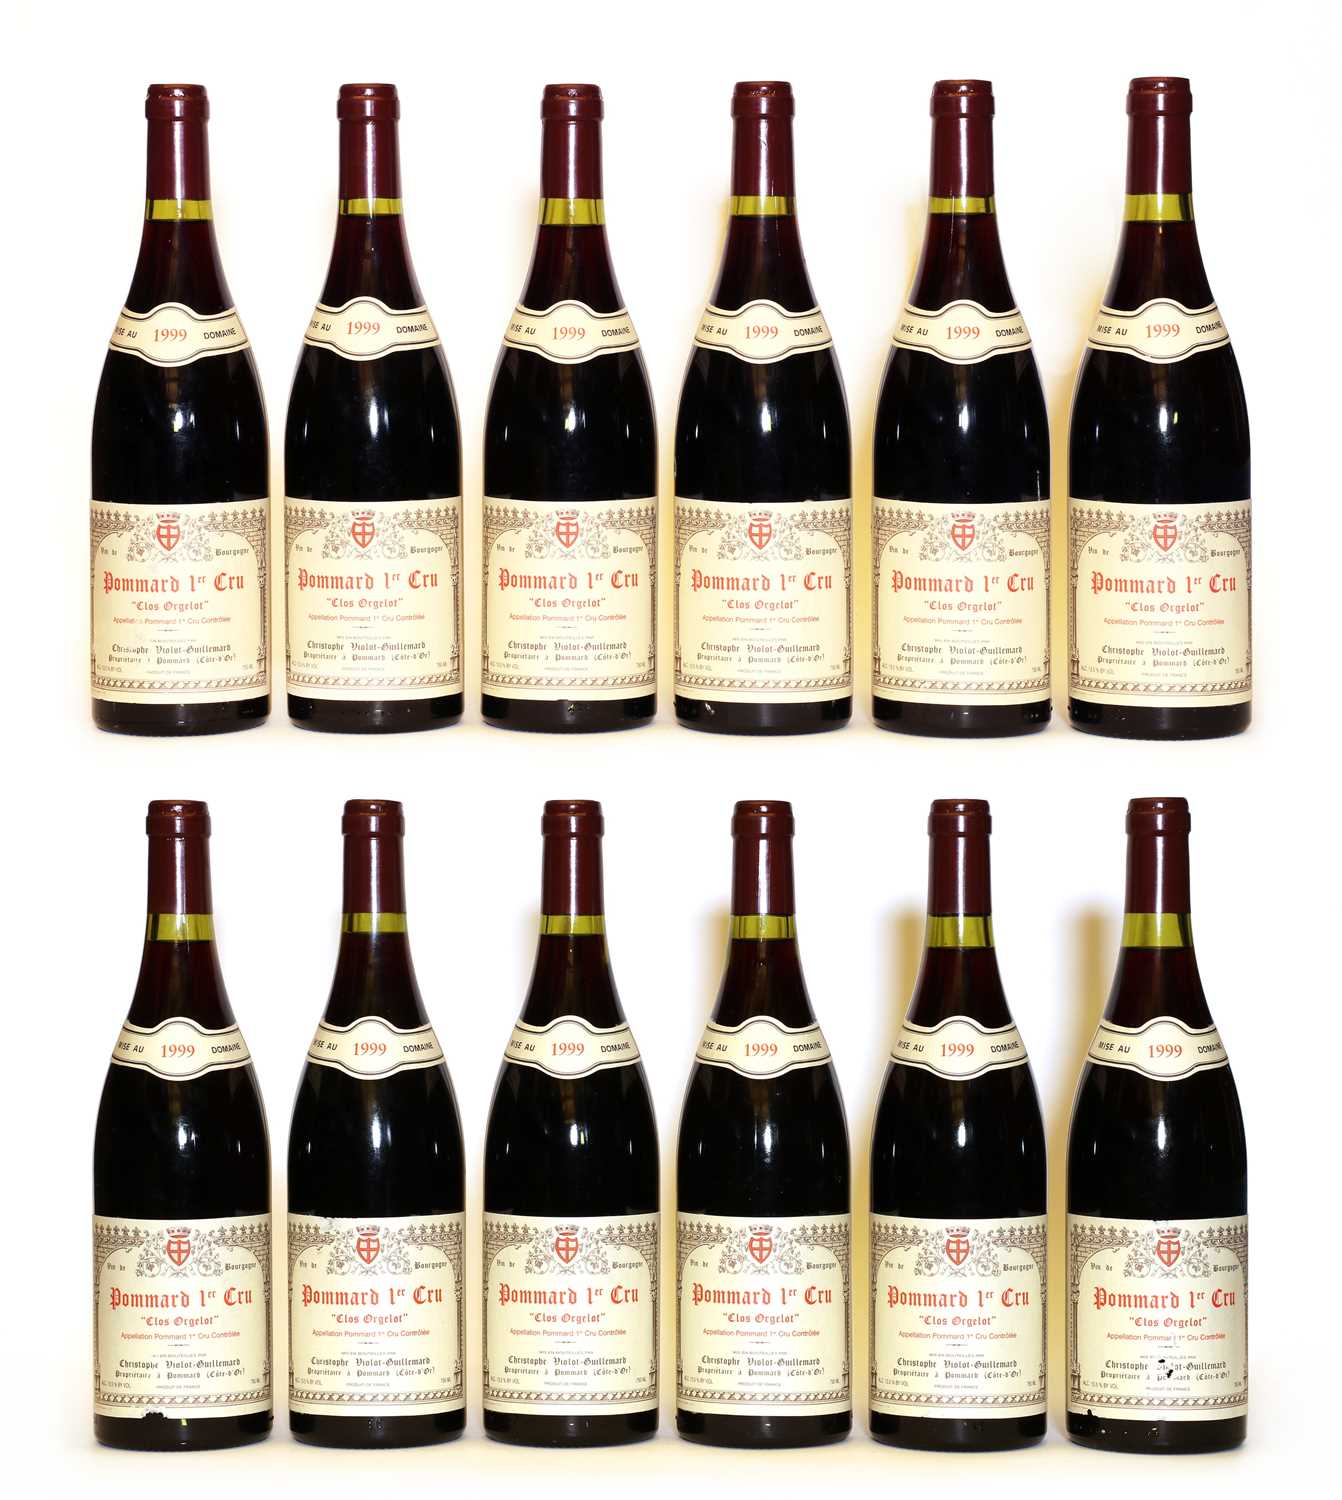 Lot 52 - Pommard, 1er Cru, Clos Orgelot, Domaine Violot-Guillemard, 1999, twelve bottles (boxed)